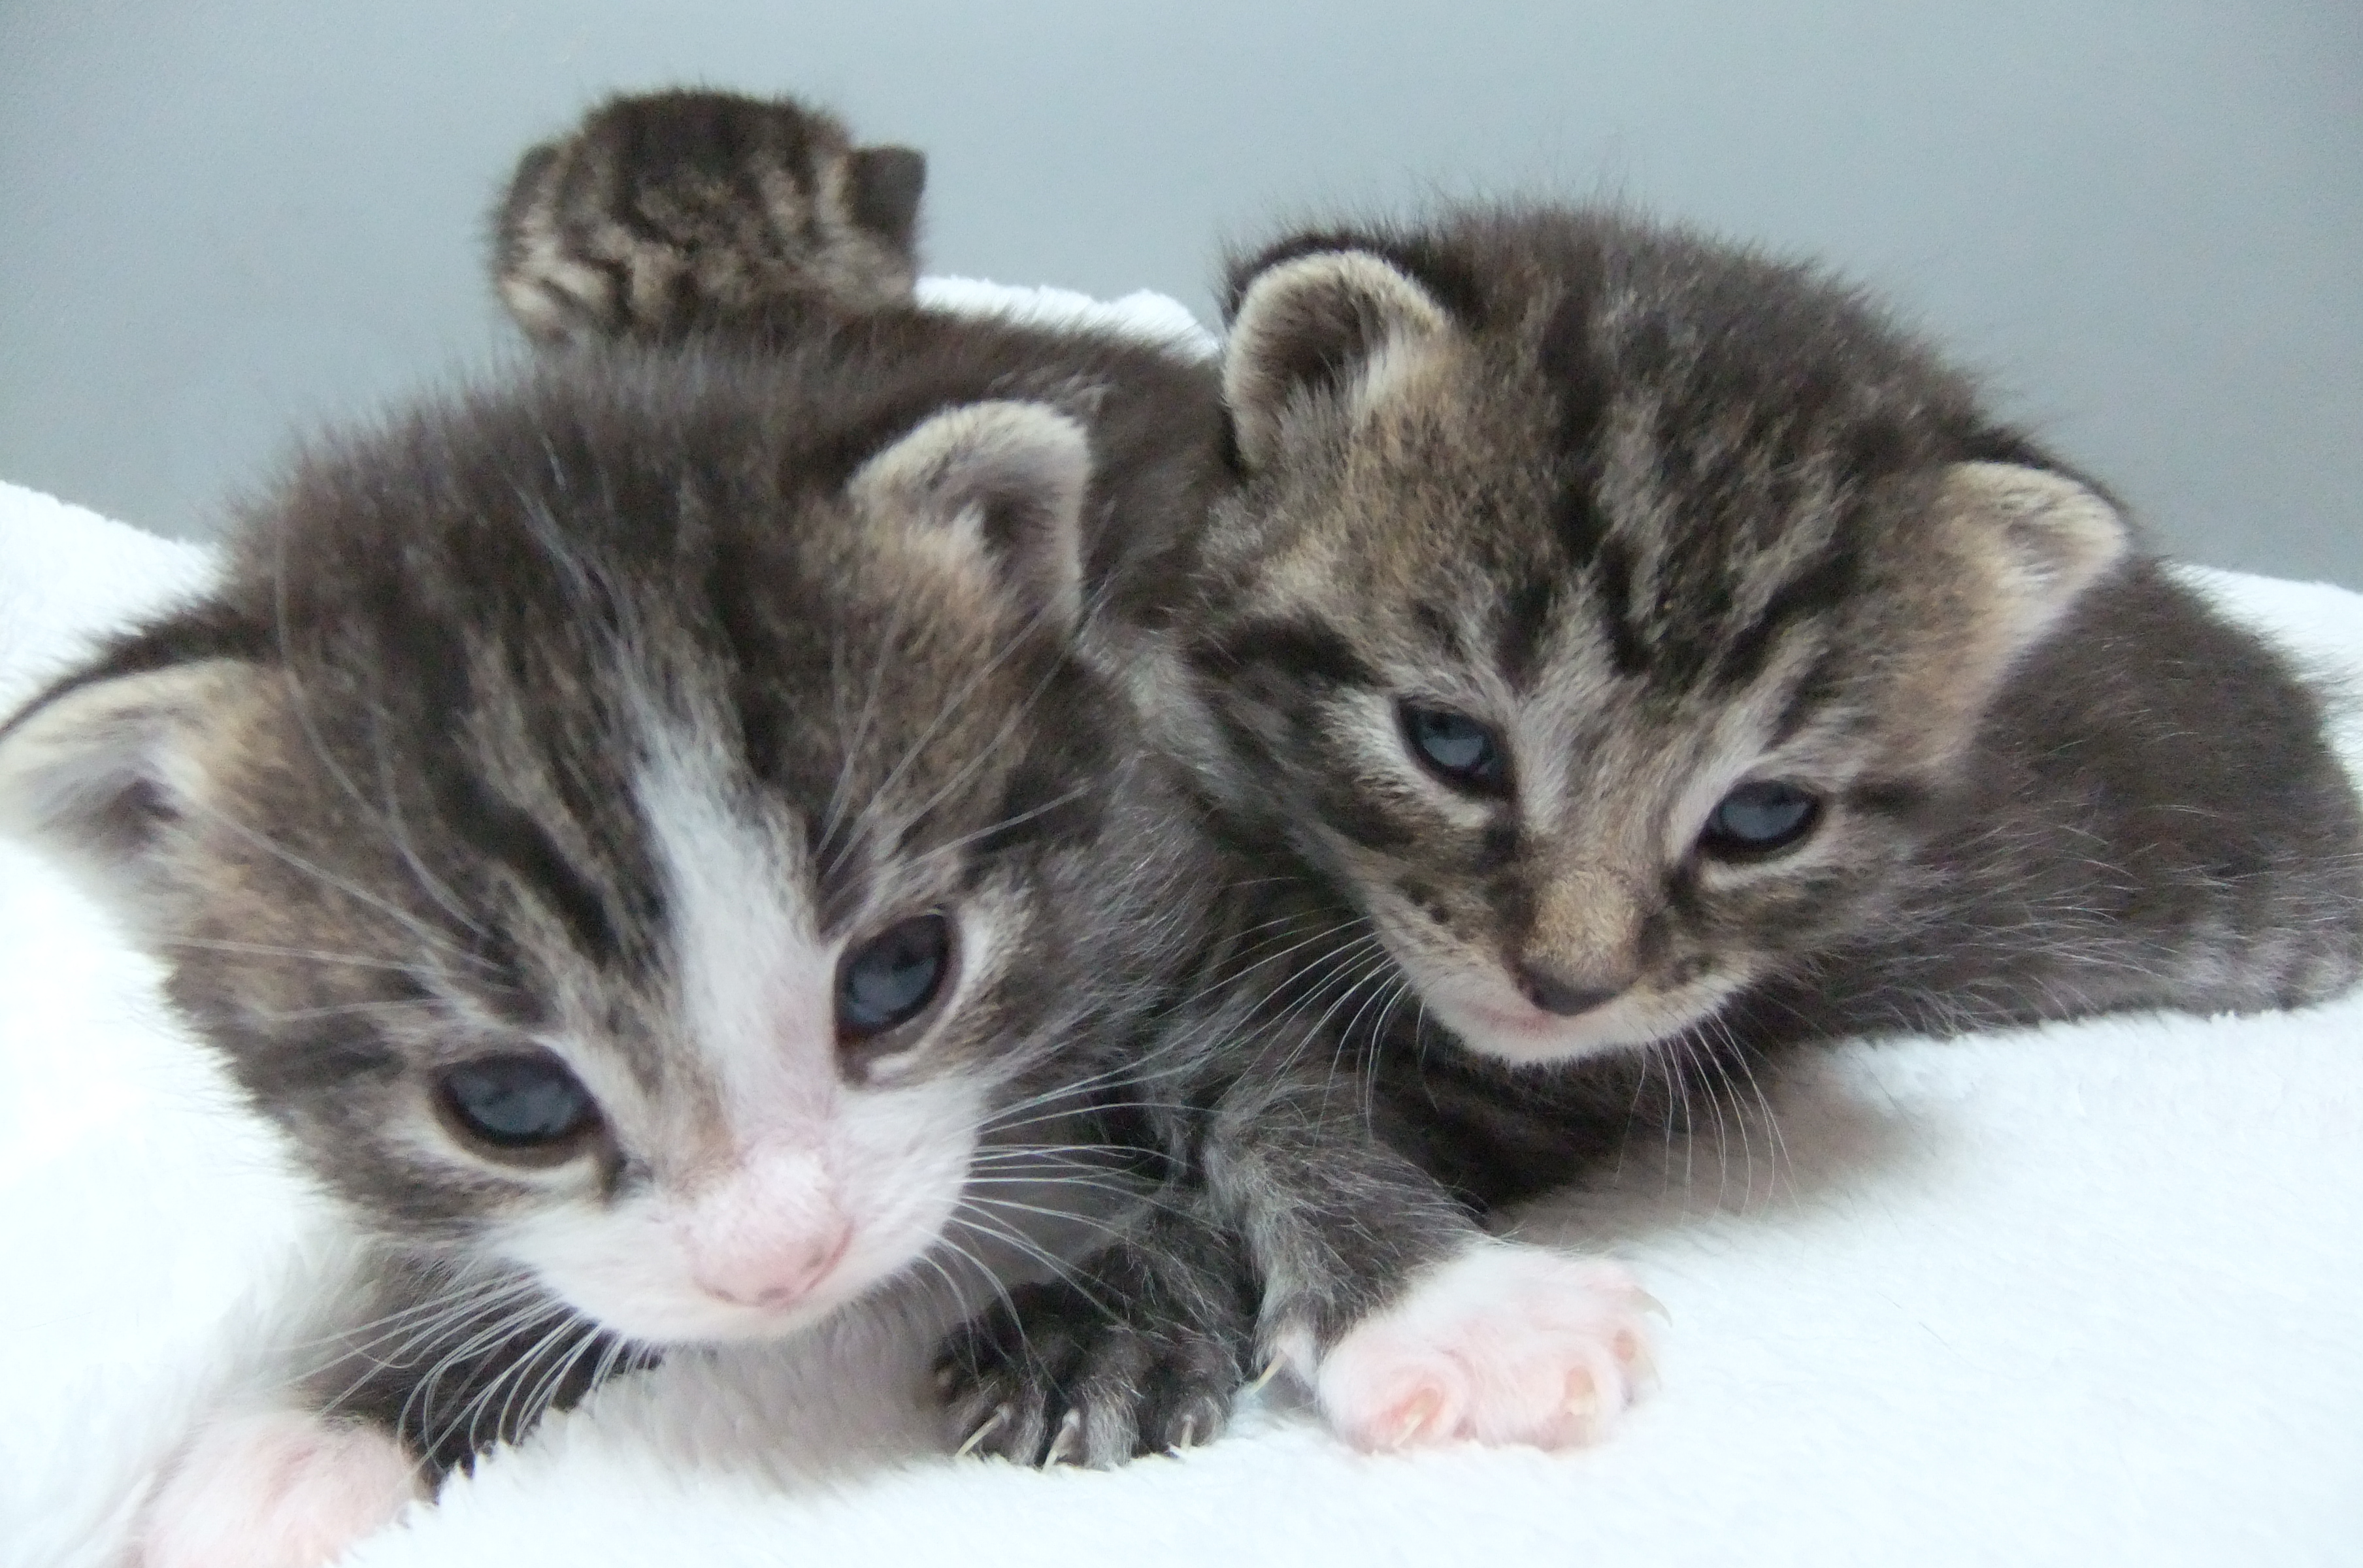 werkgelegenheid mooi Begraafplaats Informatie over kittens - Dierenasiel Walcheren